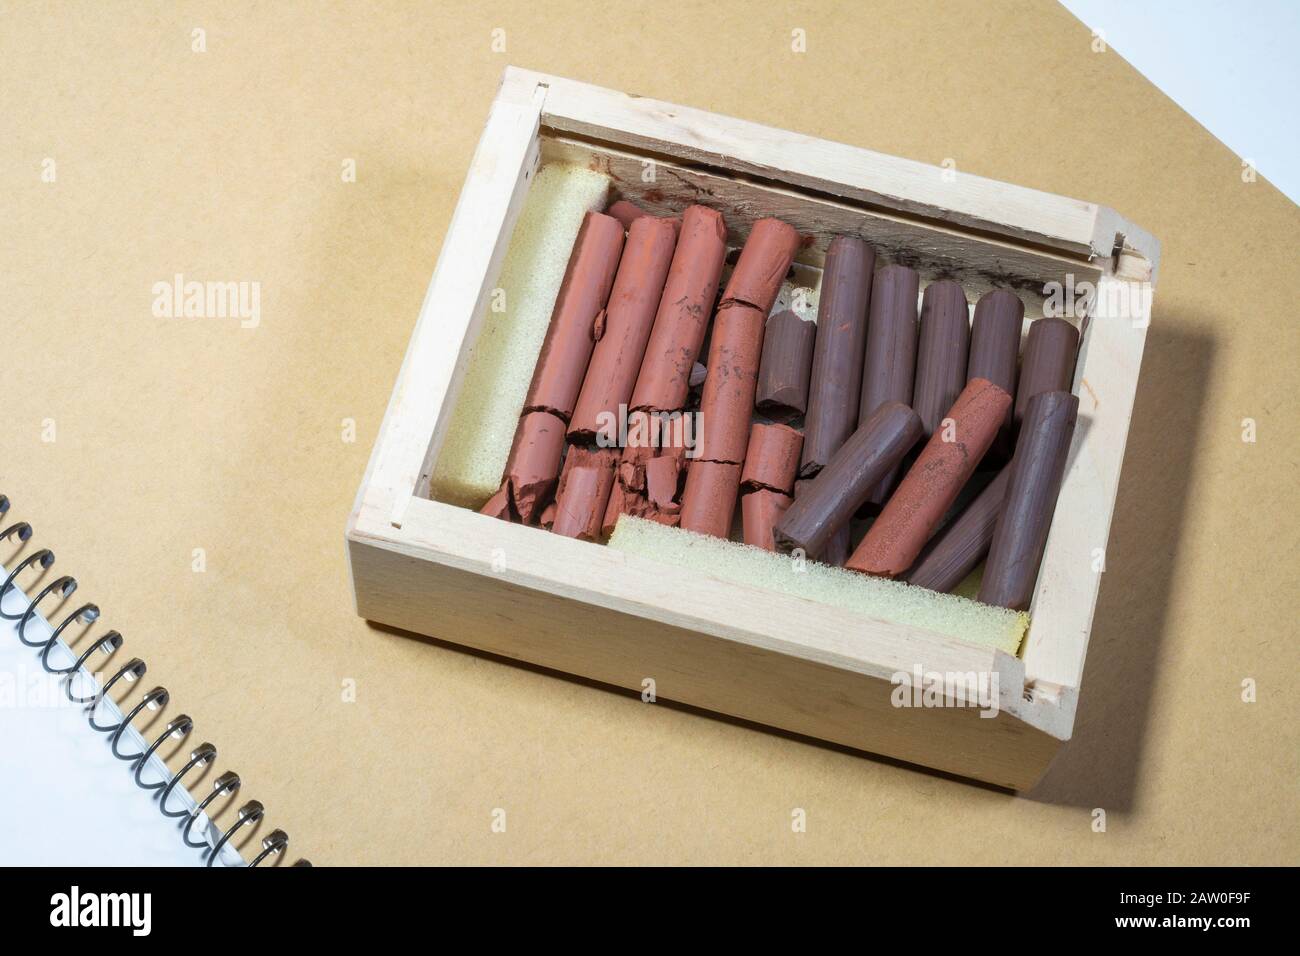 La sanguine et la sépia russes et les bâtonnets de dessin rouges dans une boîte en bois Banque D'Images